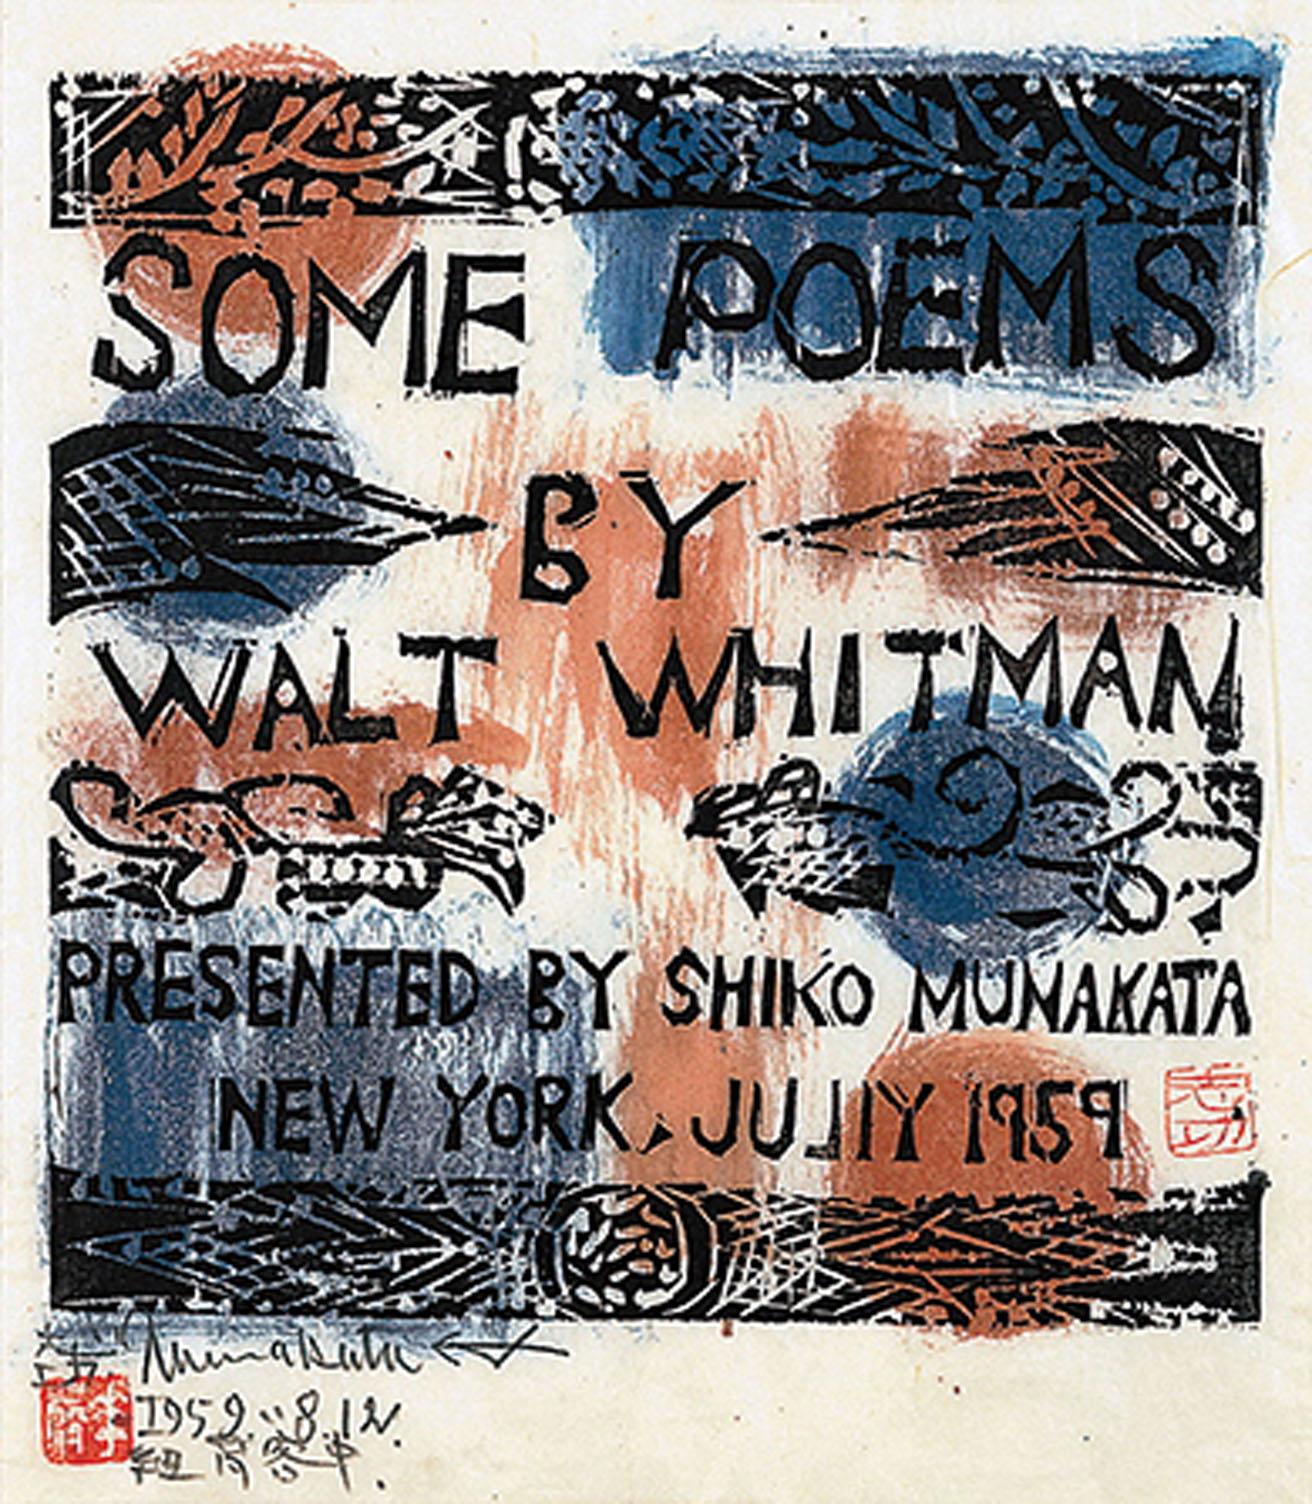 《ホイットマン詩集抜粋の柵》「Some Poem By Walt Whitman」1959年　棟方志功記念館蔵。初めての欧米滞在中に制作された作品。
